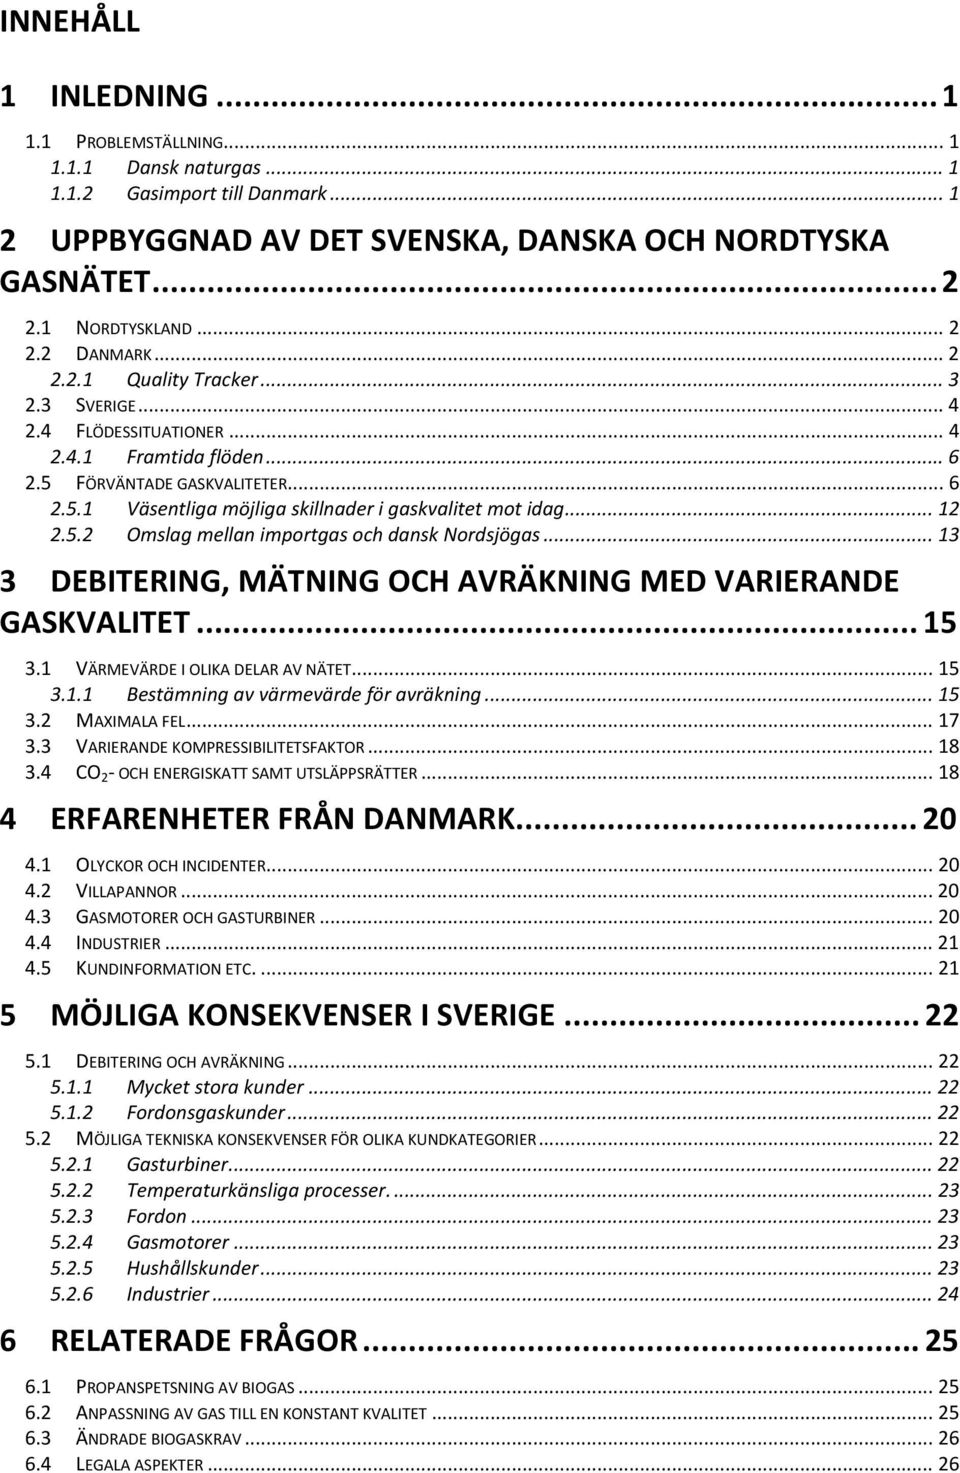 .. 12 2.5.2 Omslag mellan importgas och dansk Nordsjögas... 13 3 DEBITERING, MÄTNING OCH AVRÄKNING MED VARIERANDE GASKVALITET... 15 3.1 VÄRMEVÄRDE I OLIKA DELAR AV NÄTET... 15 3.1.1 Bestämning av värmevärde för avräkning.